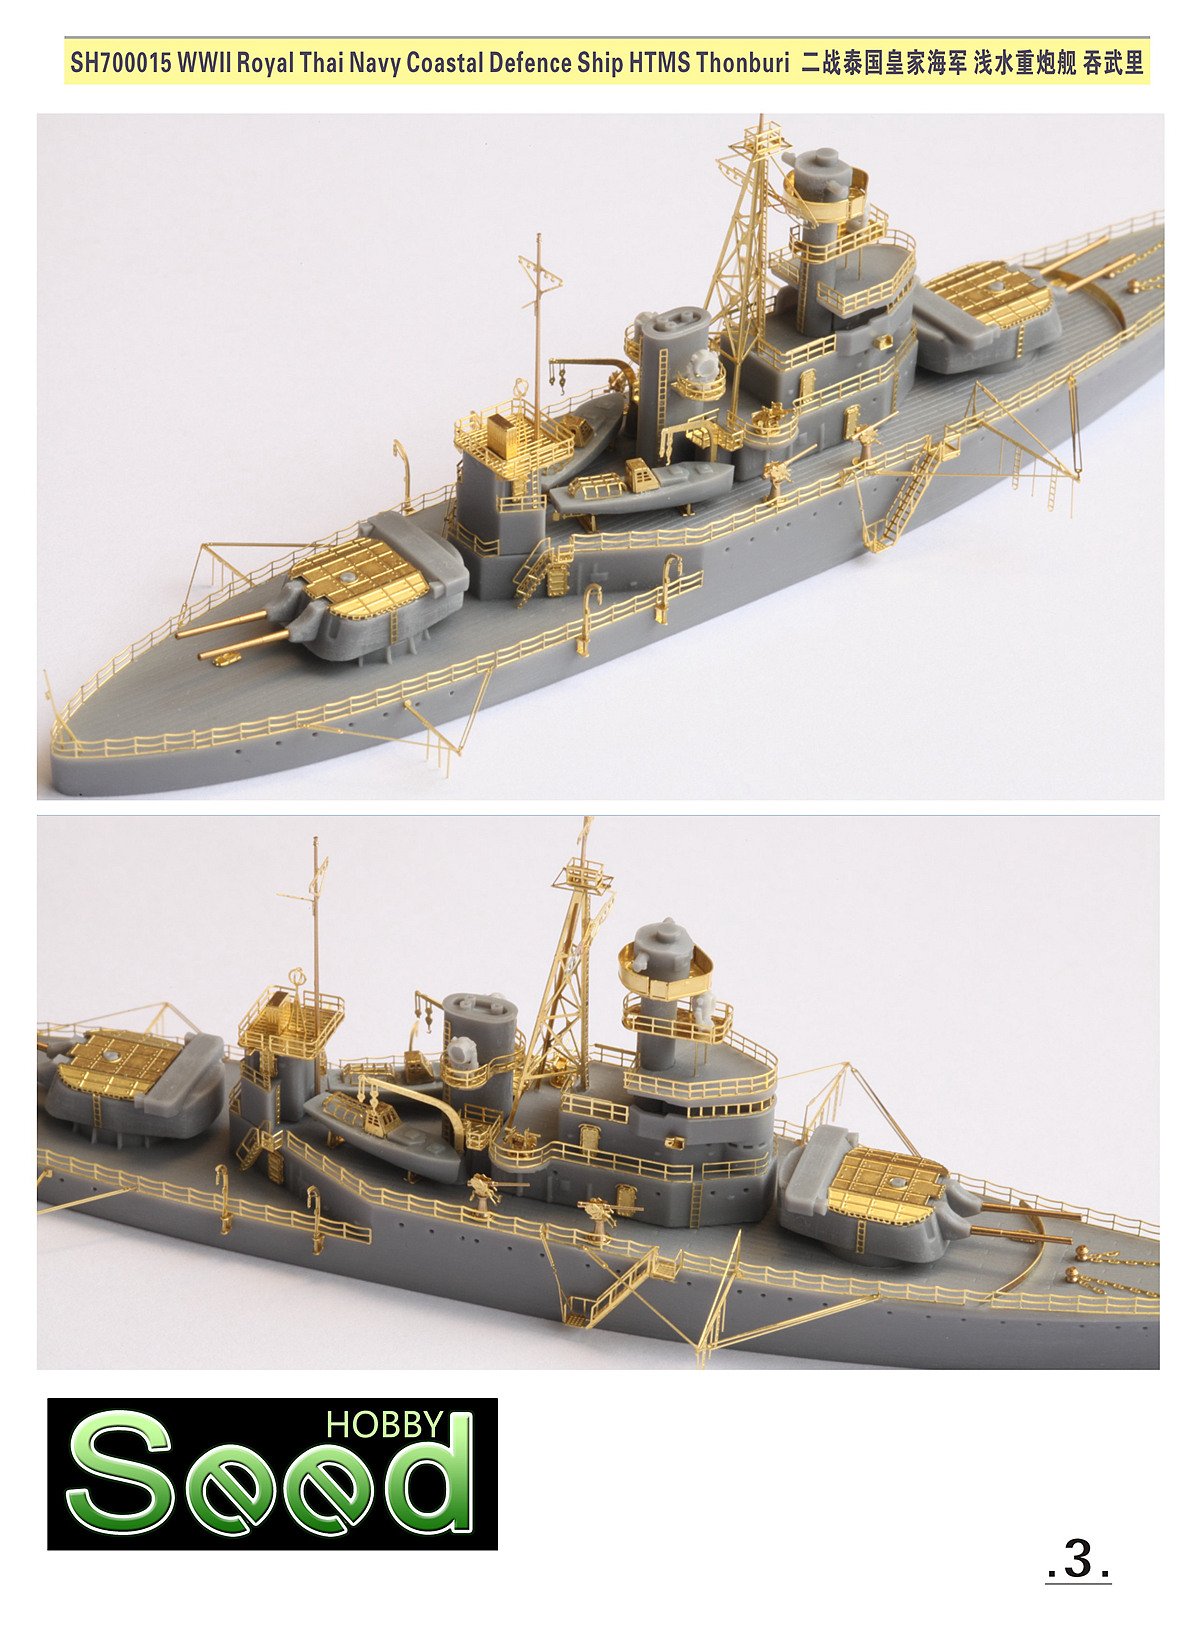 1/700 二战泰国皇家海军吞武里号浅水重炮舰树脂模型套件 - 点击图像关闭